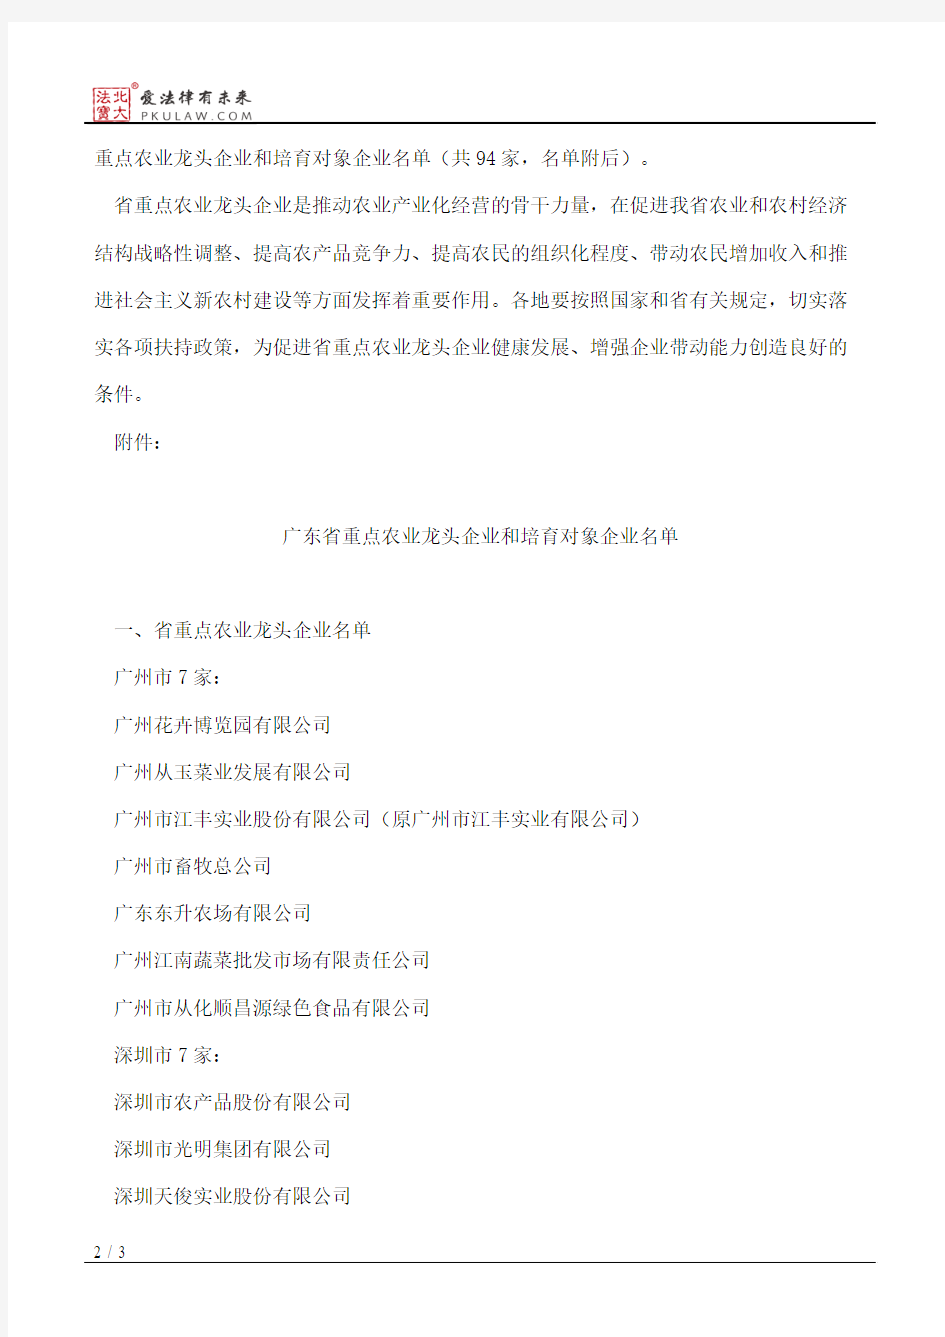 广东省农业厅办公室关于重新公布省重点农业龙头企业名单的函